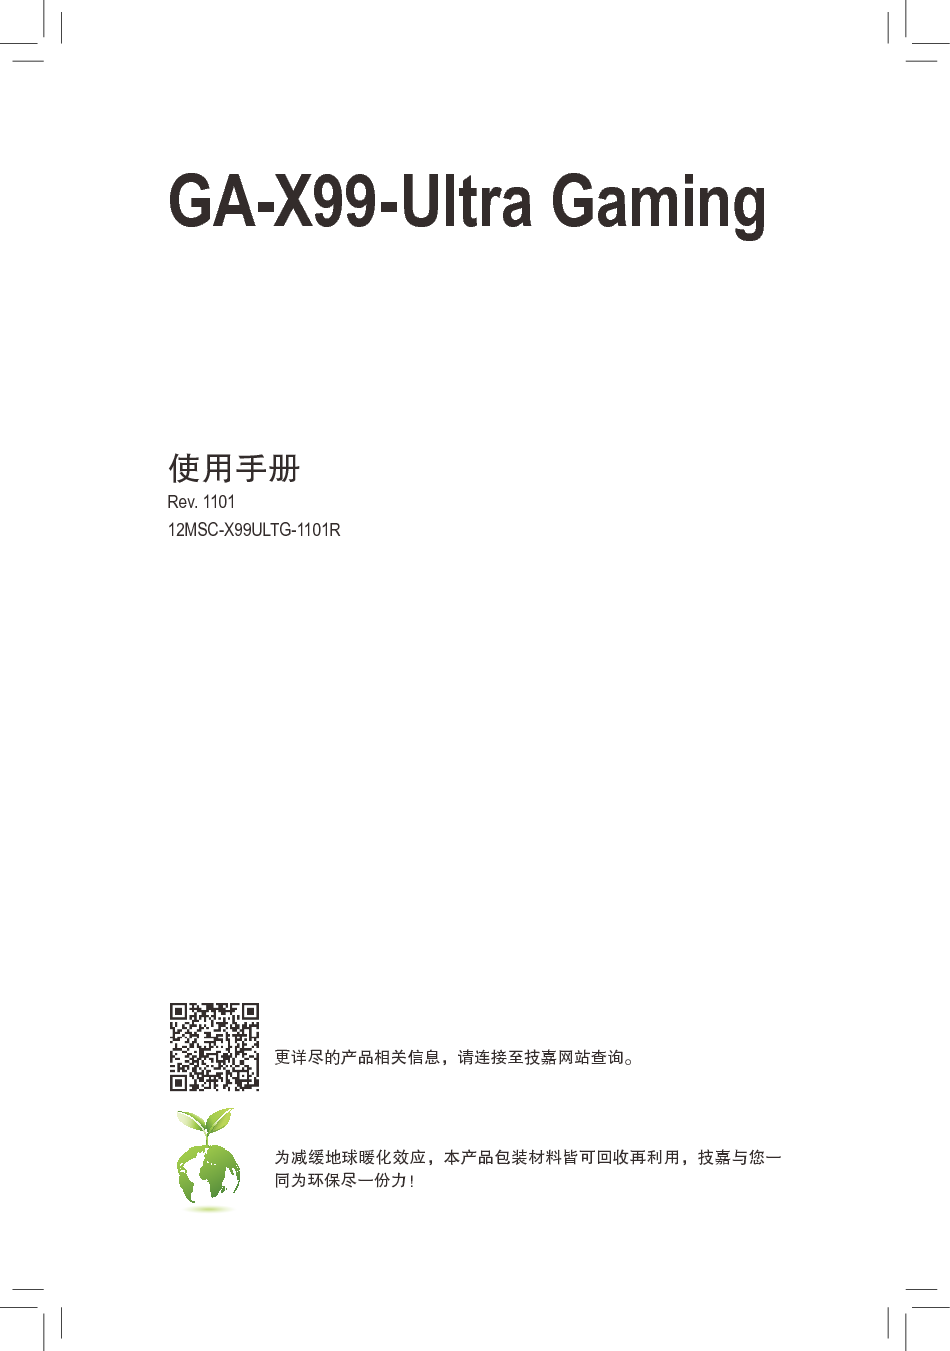 技嘉 Gigabyte GA-X99-Ultra Gaming 1101版 使用手册 封面